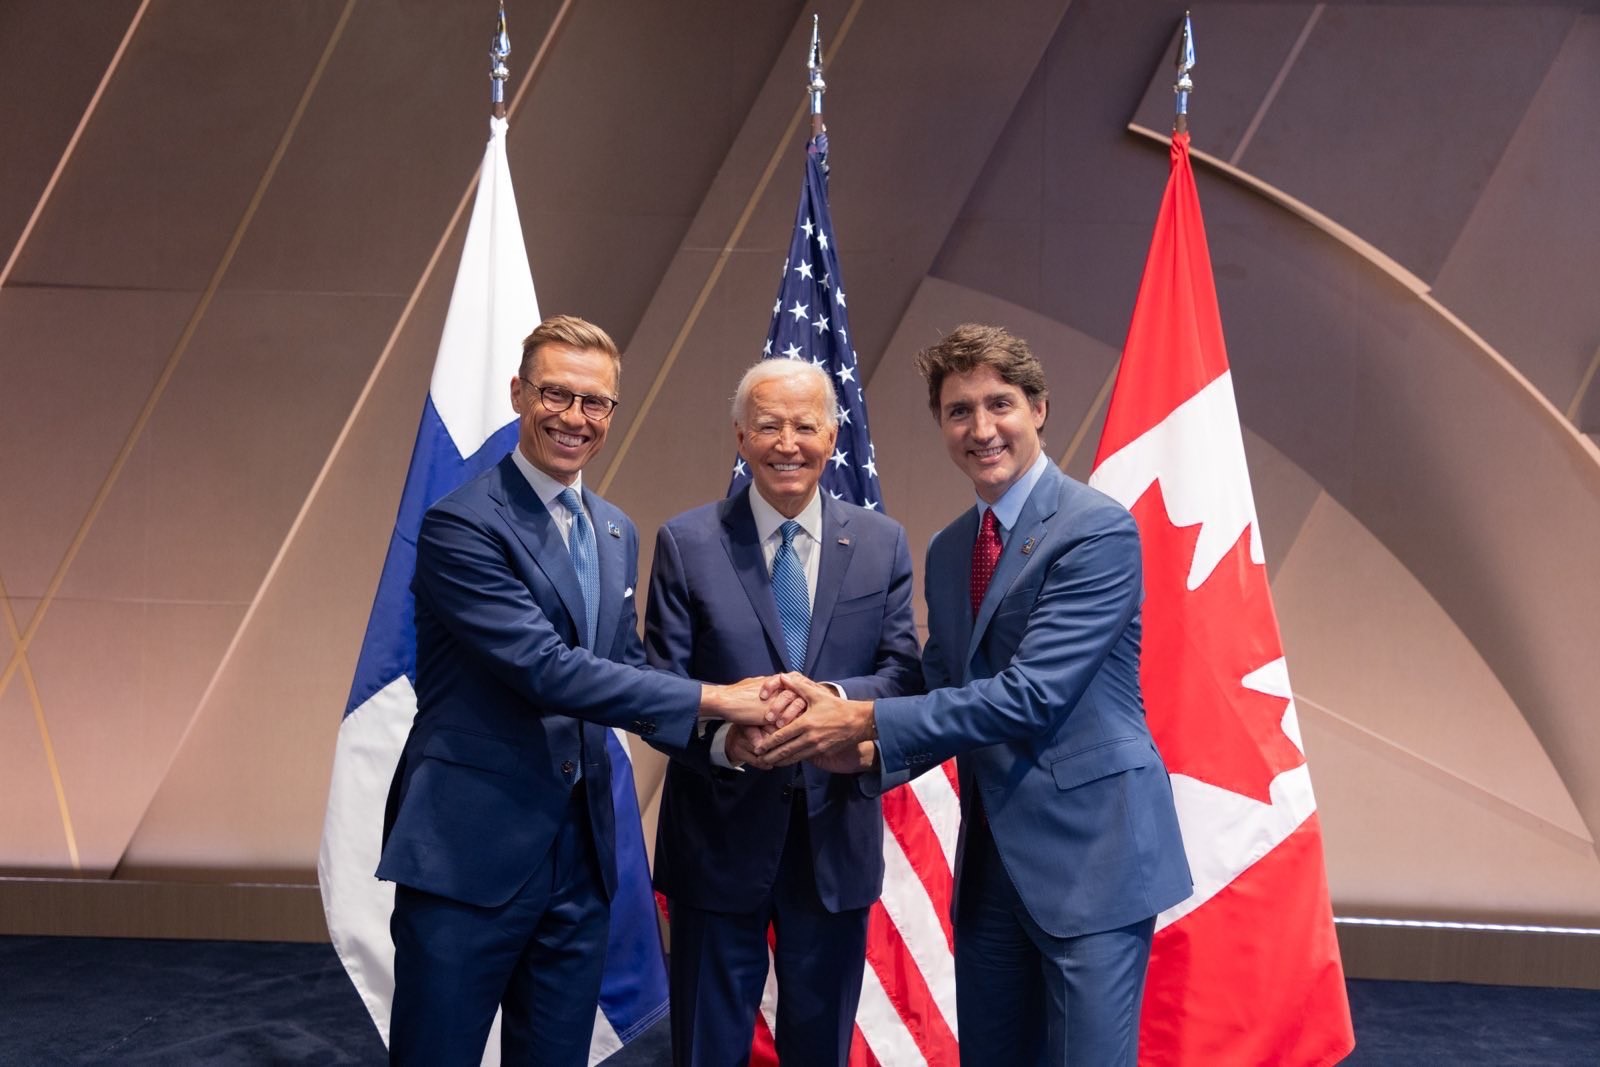 Davie entend jouer un rôle clé dans le partenariat historique entre la Finlande, le Canada et les États-Unis pour la construction de brise-glaces